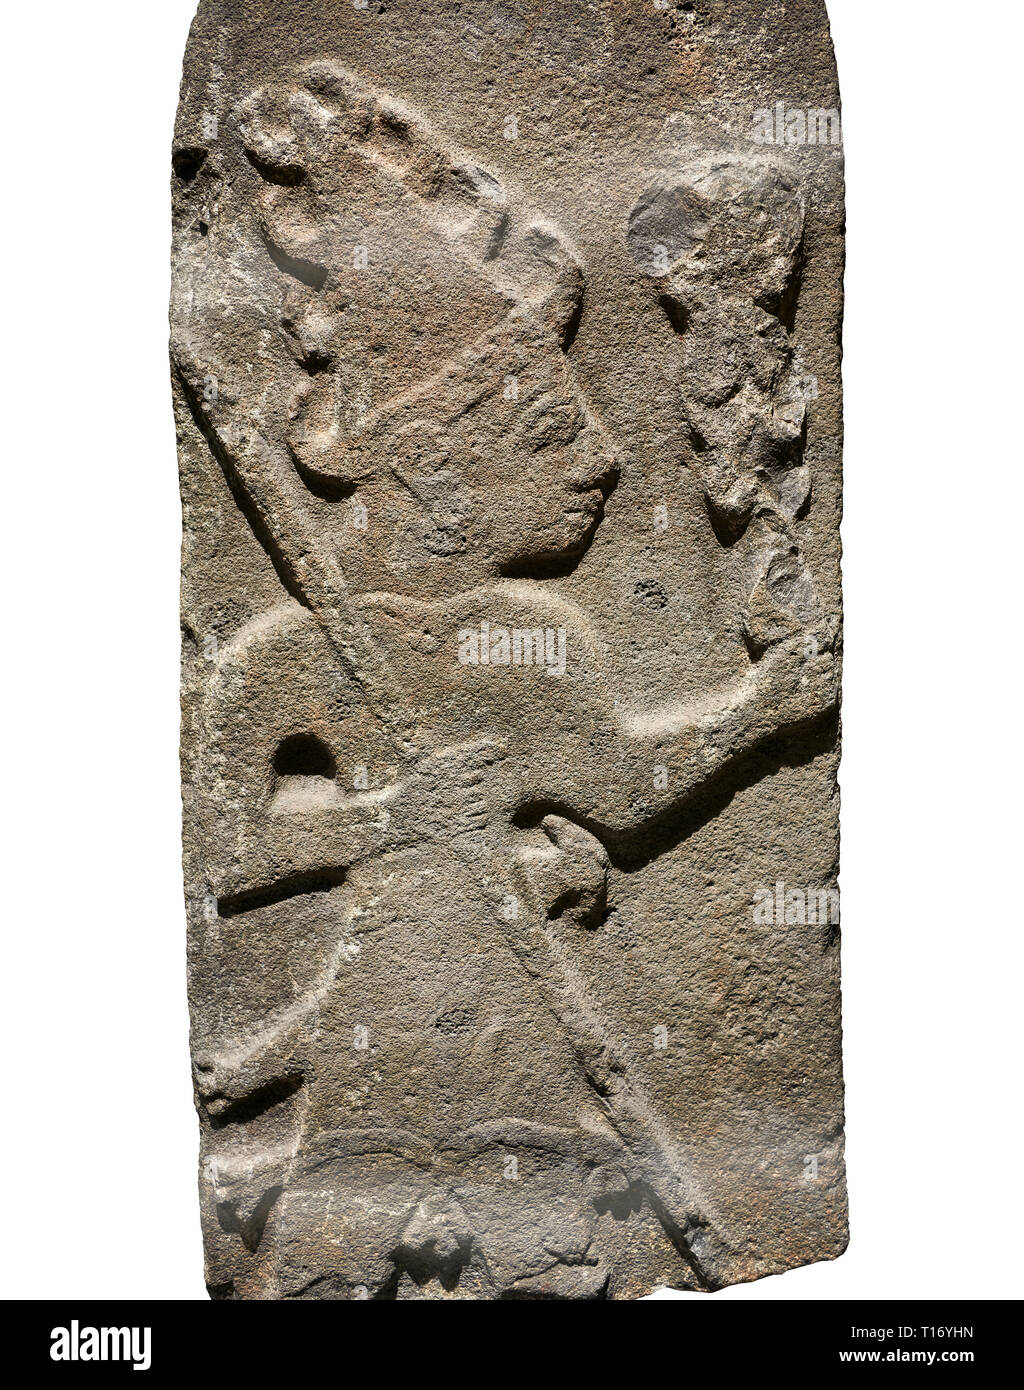 Hethiter monumentale Relief ofa Gott wahrscheinlich Holding Fangstangen. Ende der hethitischen Zeit - 900-700 BC. Archäologisches Museum Adana, Türkei. Erneut Stockfoto